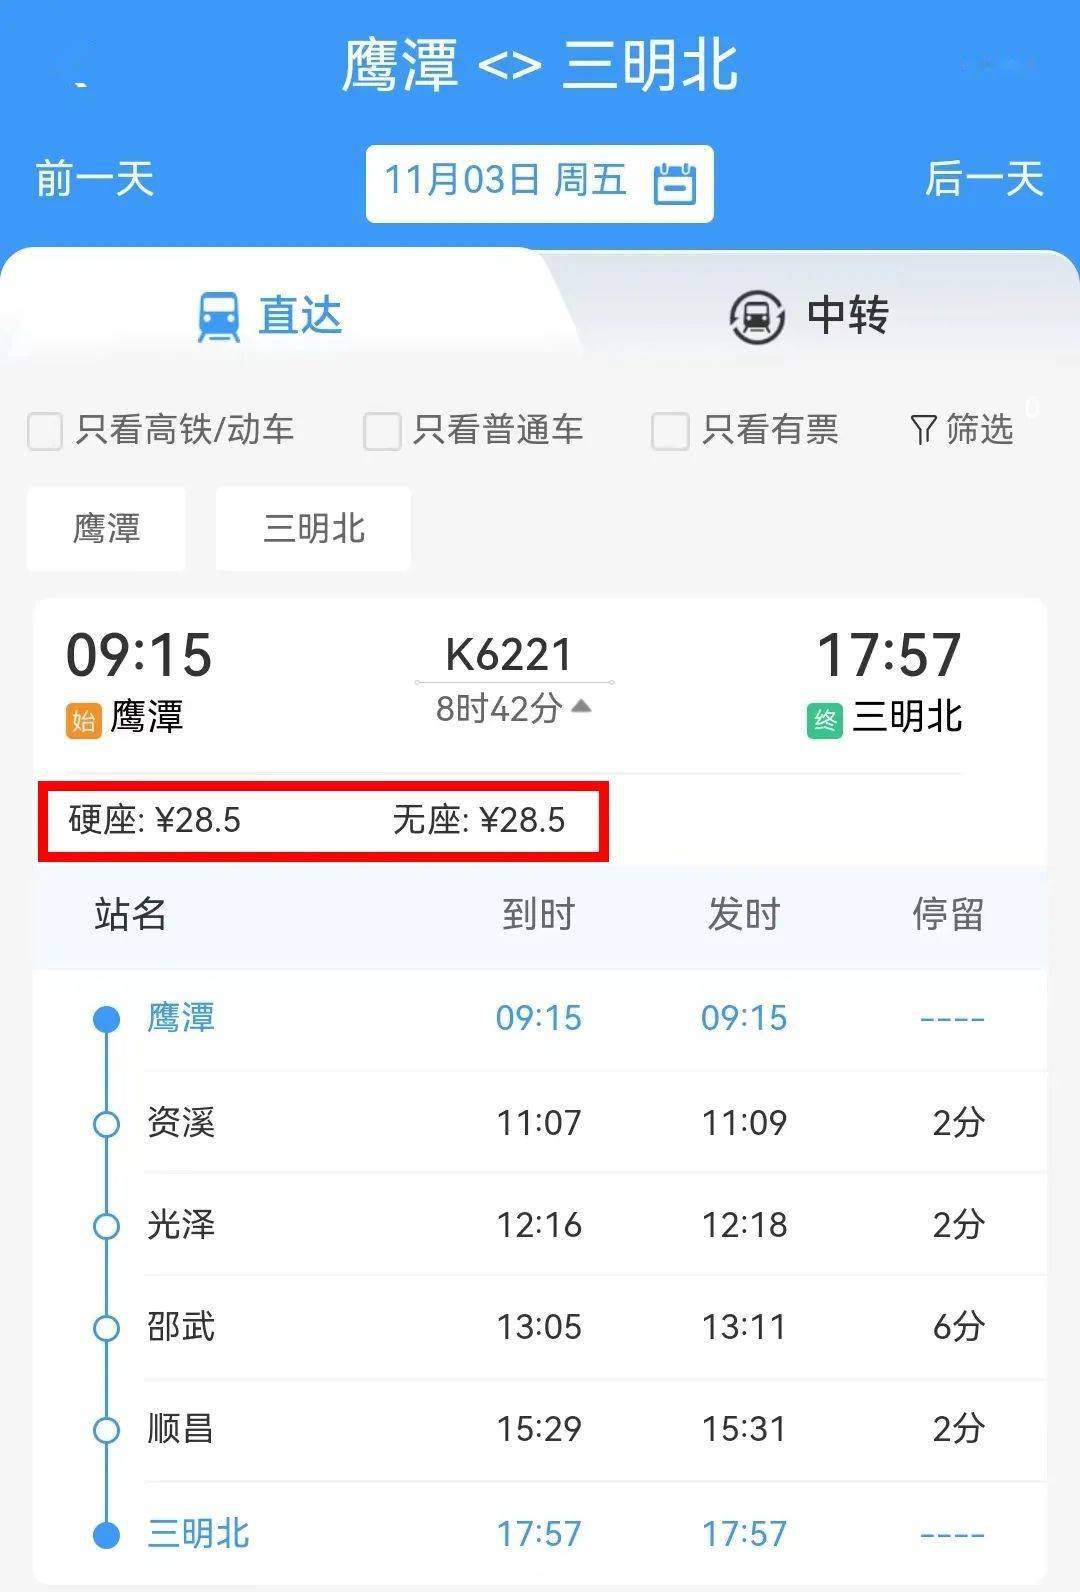 11月1日起,三明北增开旅客列车!票价实惠,线路怀旧